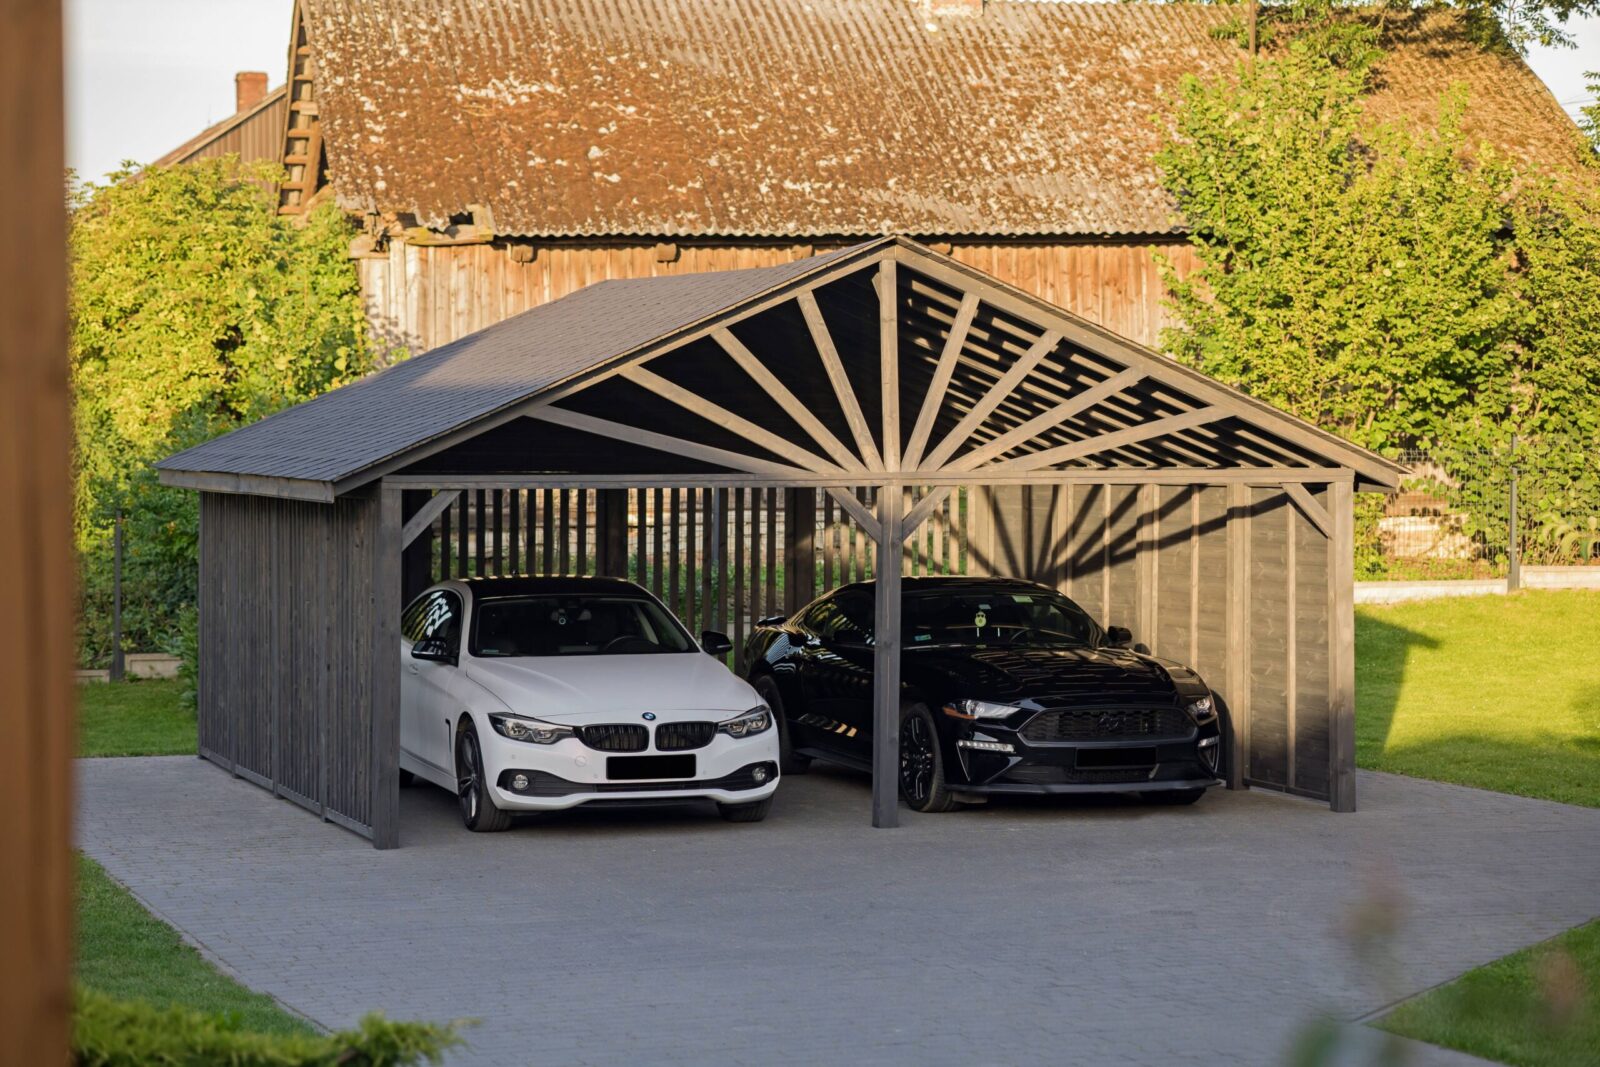 Białe BMW 420 D oraz czarny Ford Mustang GT zaparkowane w nowoczesnej wiacie garażowej w kolorze grafitowym na tle starego drewnianego domu